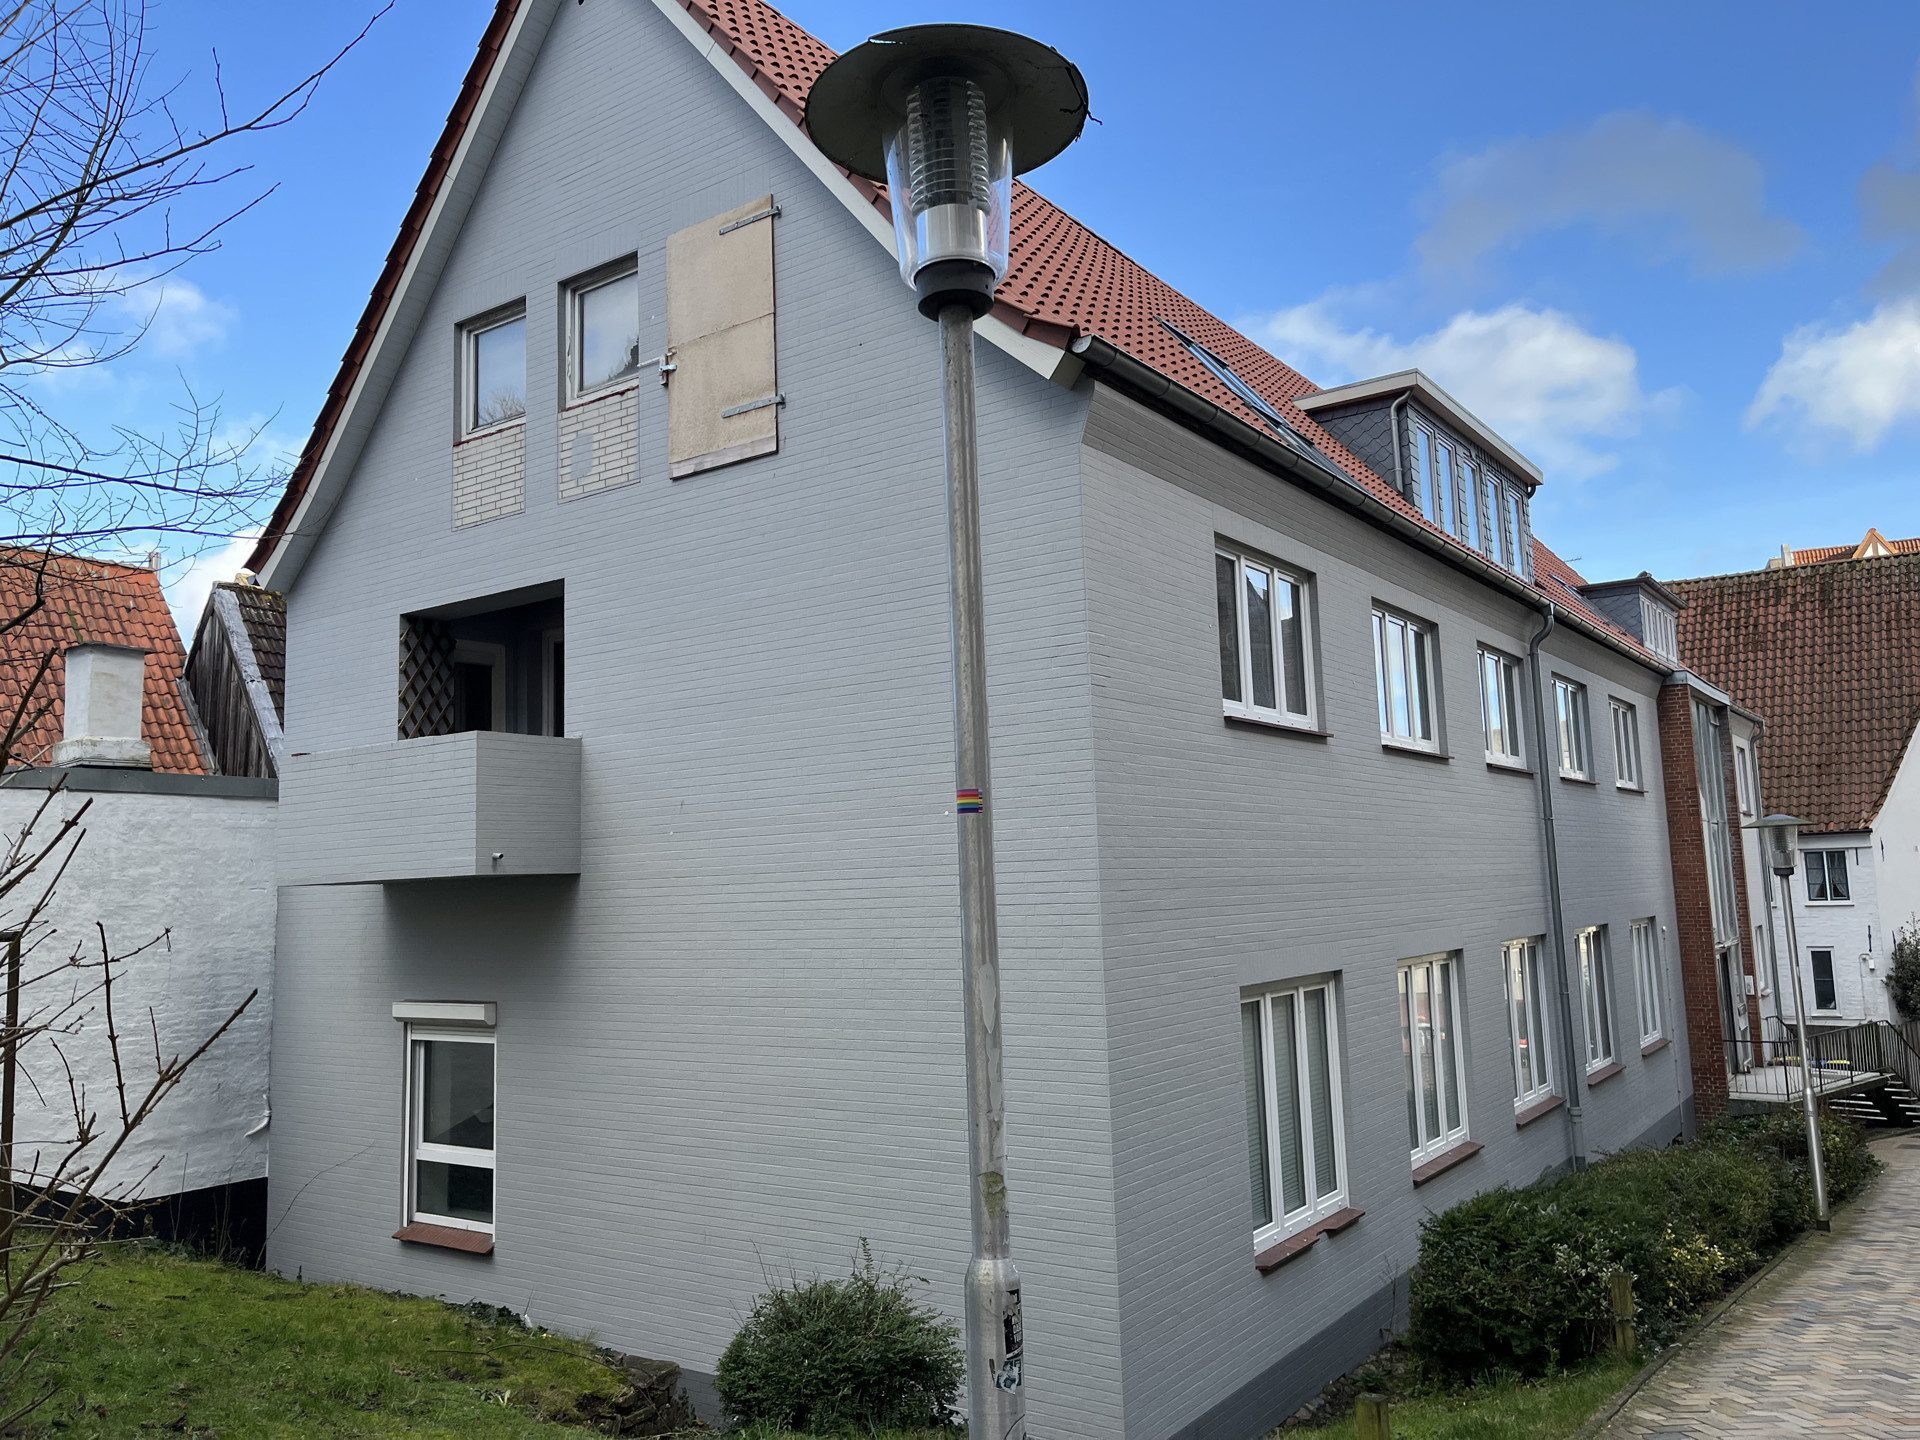 Immobilienangebot - Flensburg - Alle - Traumhafte 5-Zimmerwohnung in zentraler & ruhiger Lage!
Balkon für sonnige Abendstunden!
WG-geeignet